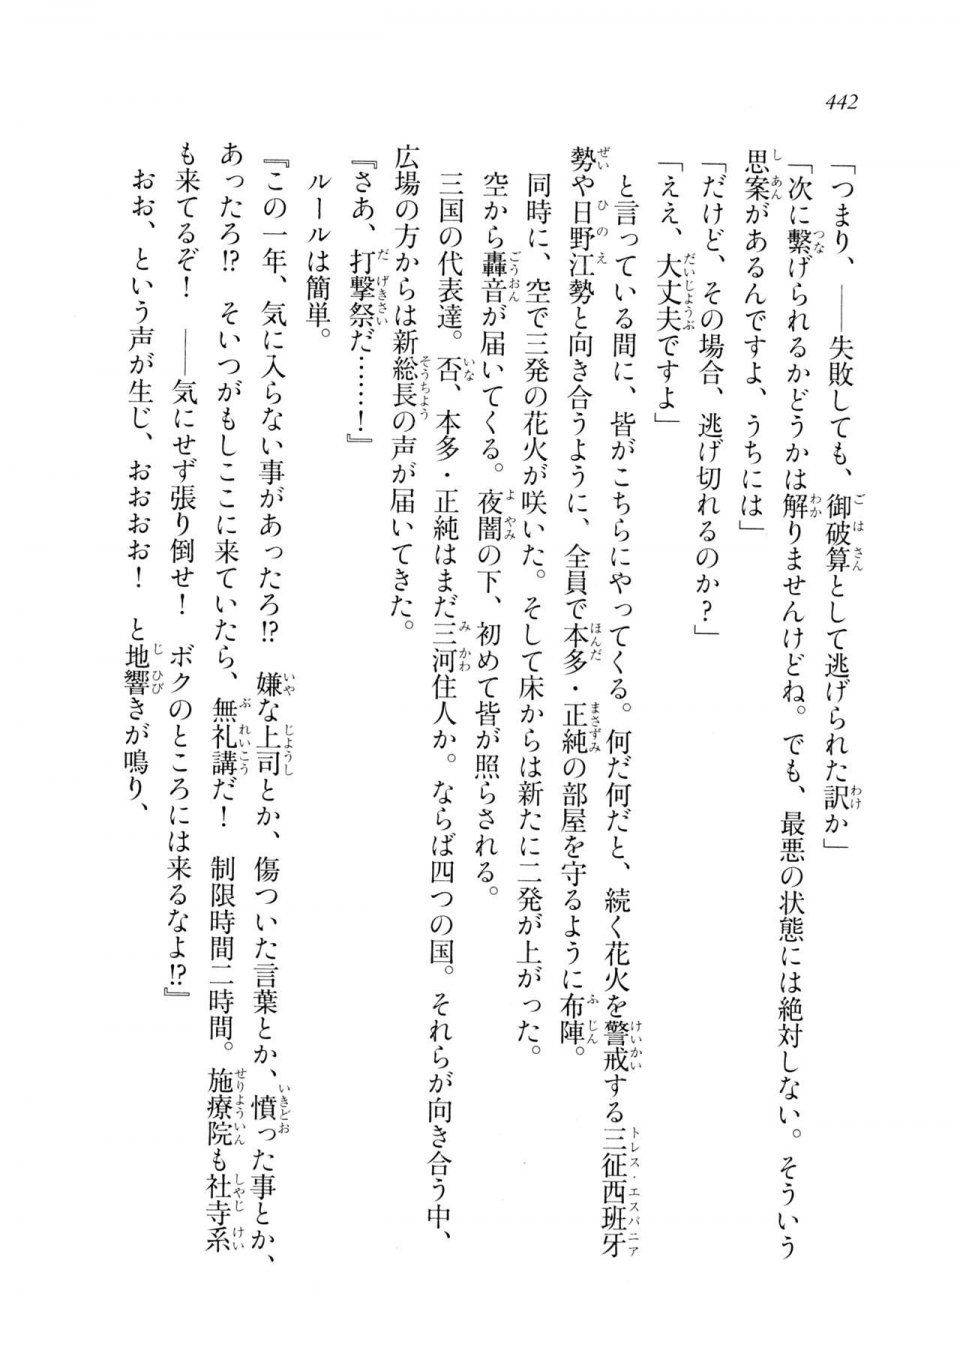 Kyoukai Senjou no Horizon LN Sidestory Vol 2 - Photo #440